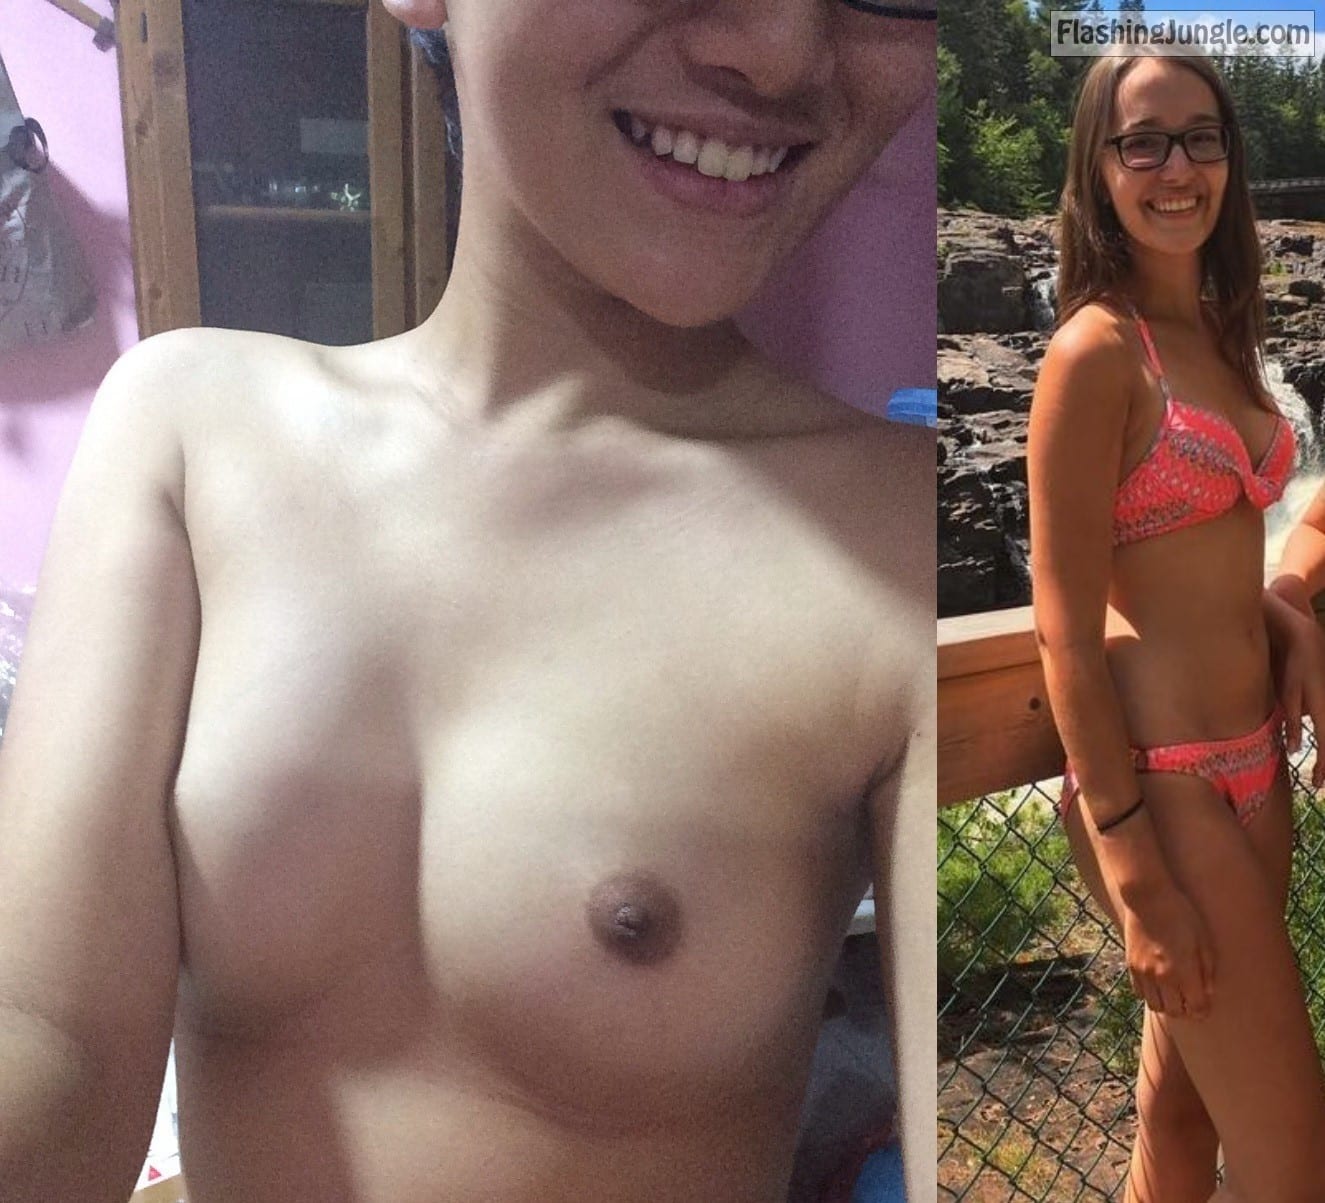 Teen Flashing Pics Real Amateurs - Jade teen slut boobs – clothed nude